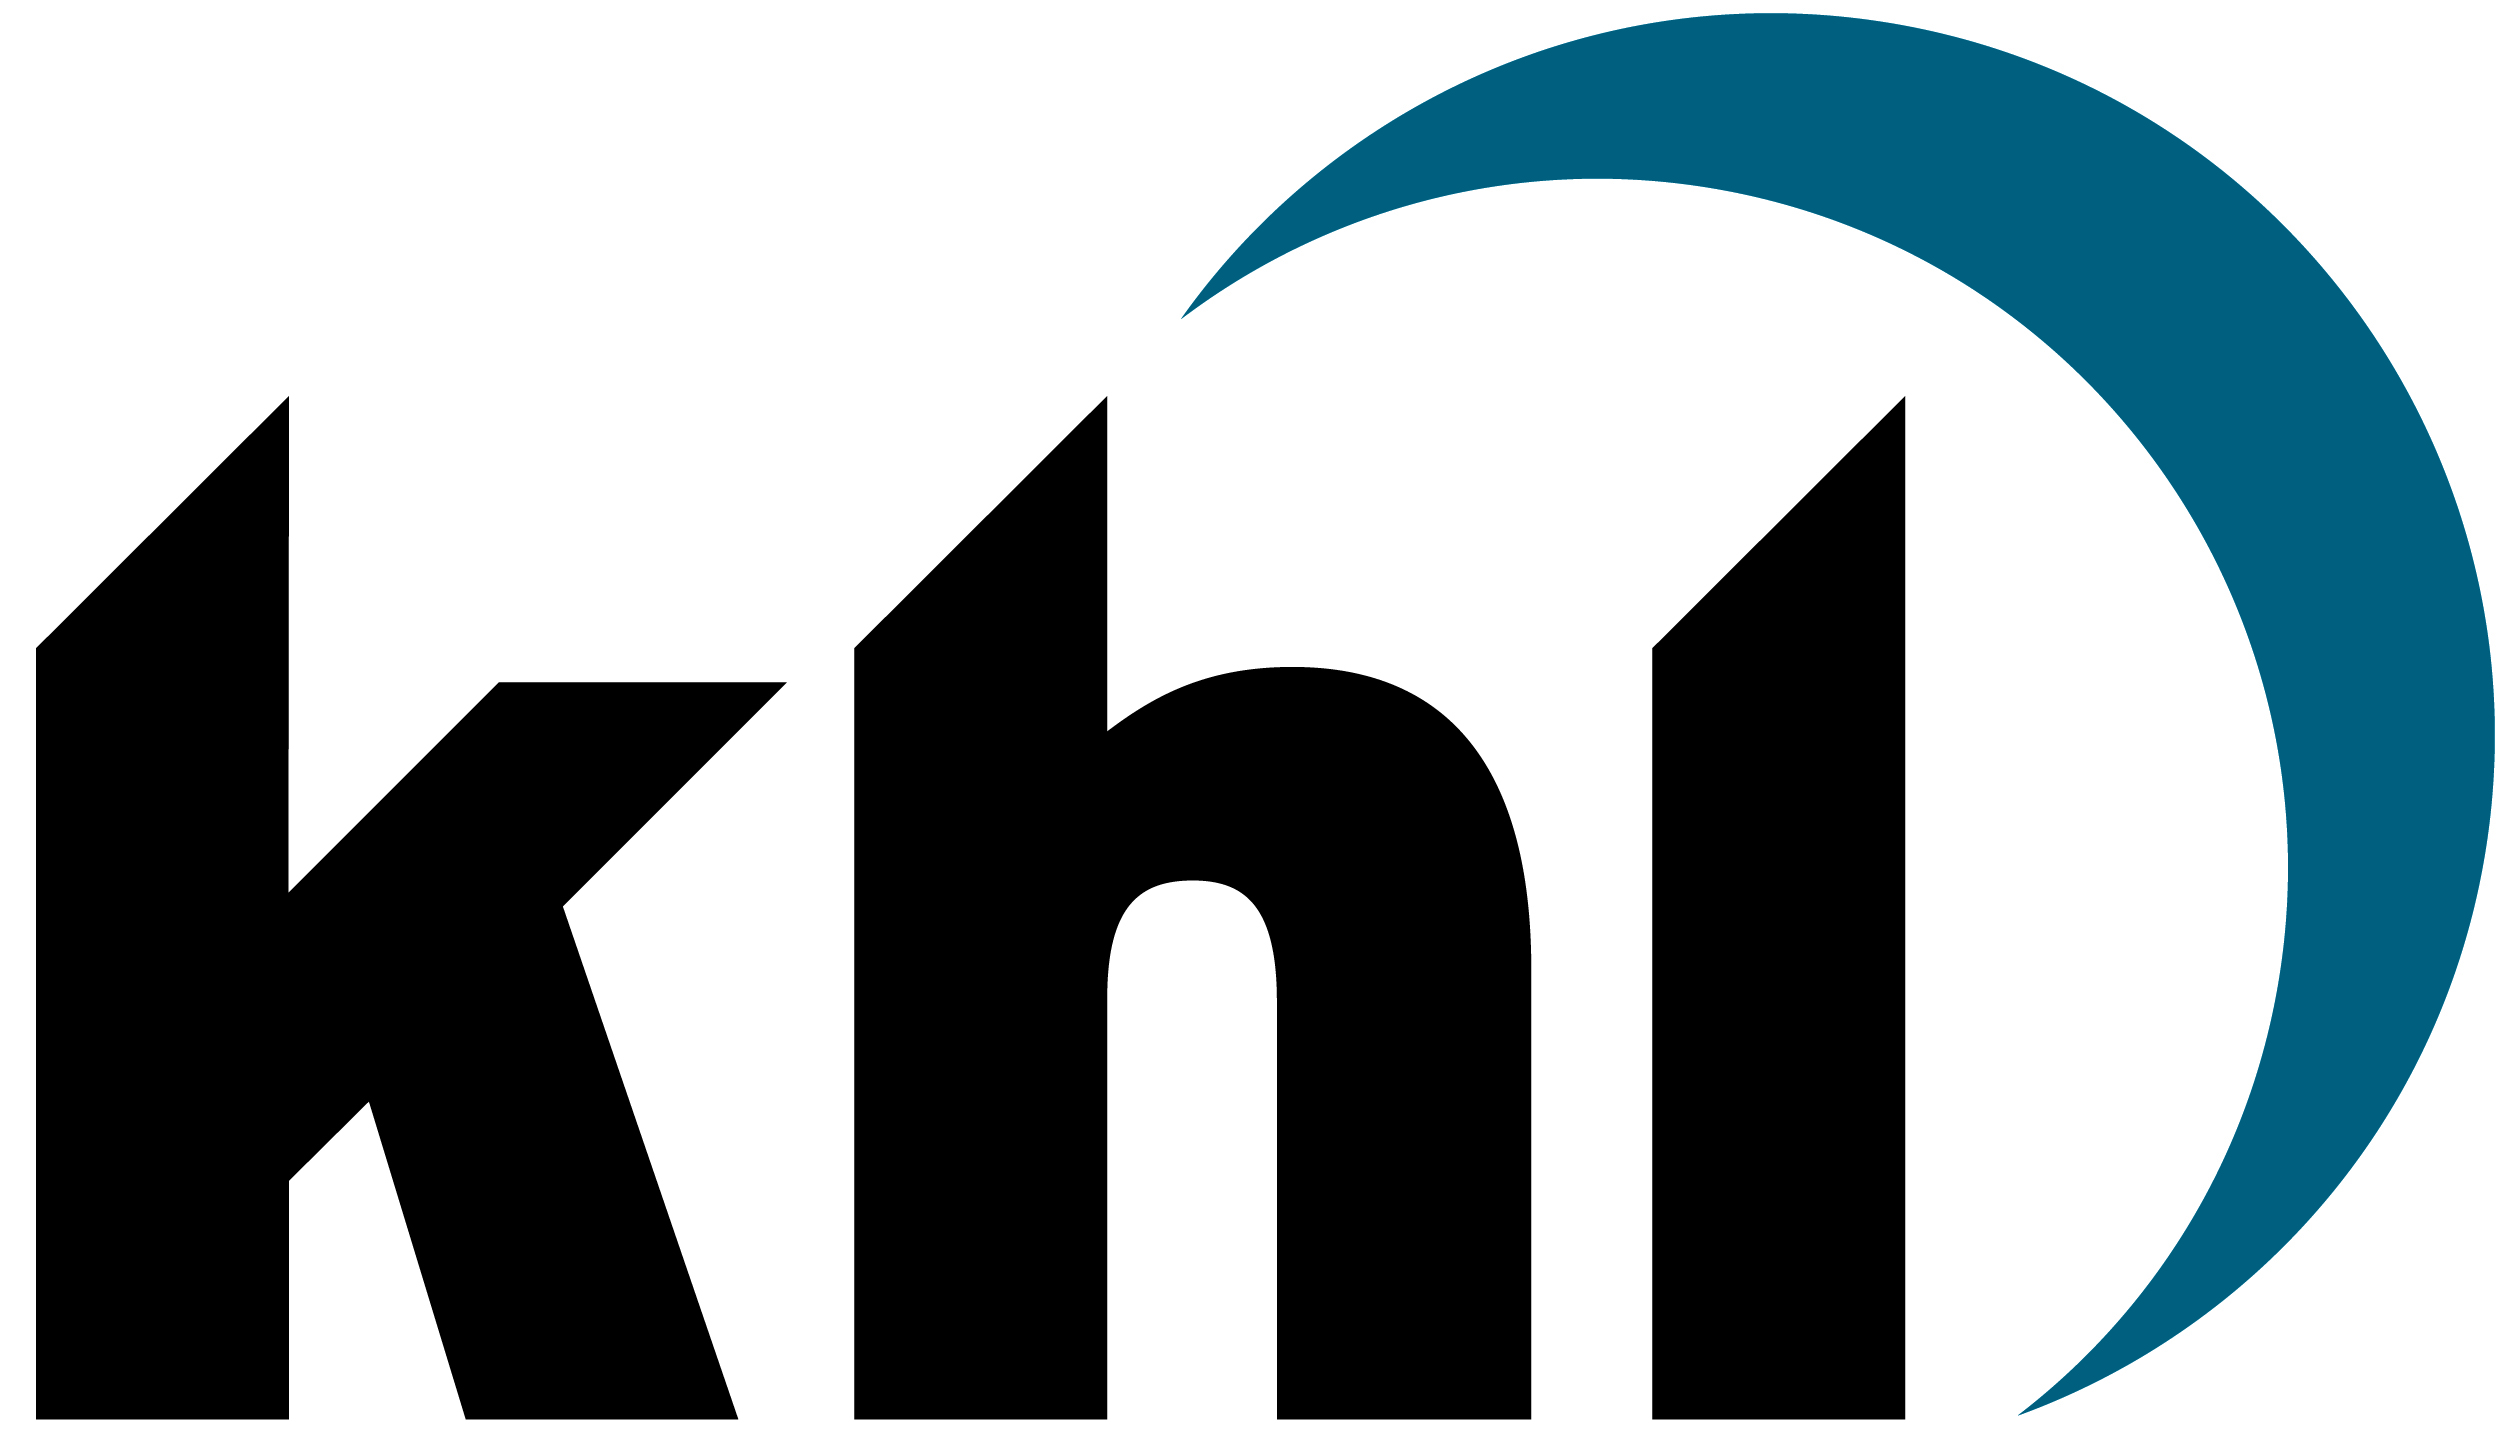 KHL FINAL logo CMYK 300dpi - CEA: Construction Equipment Association